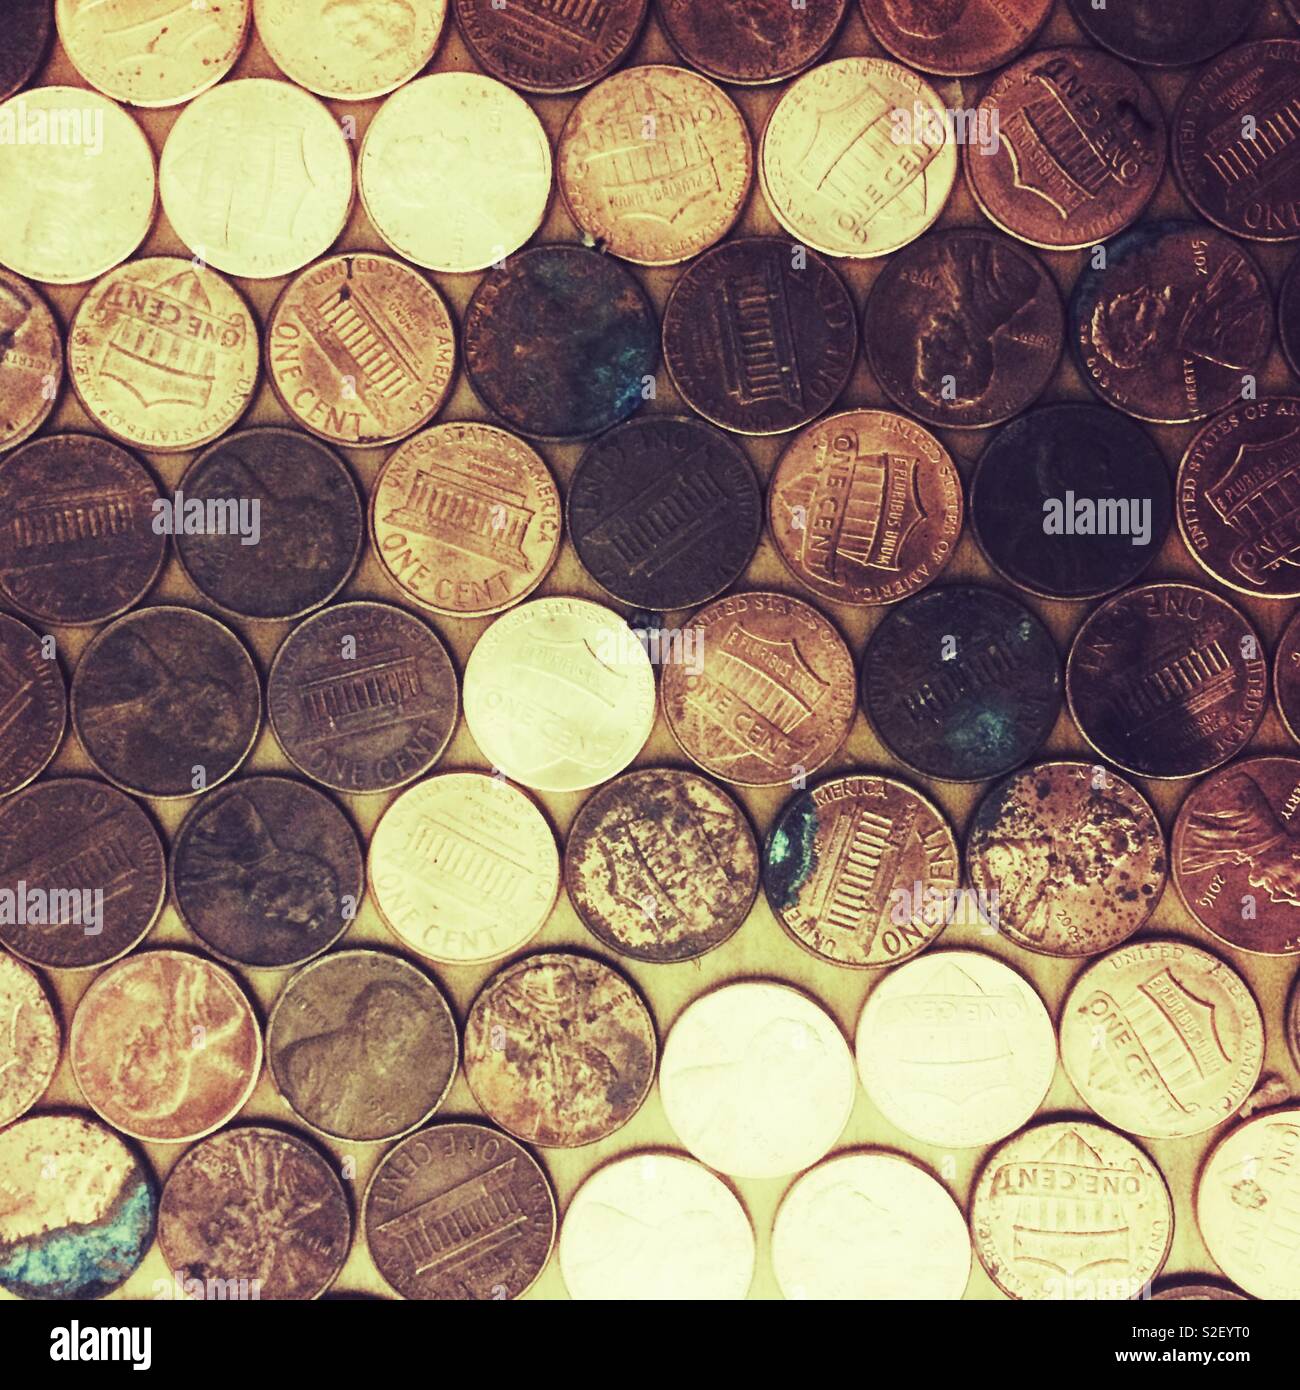 Las monedas de un centavo americano. Foto de stock